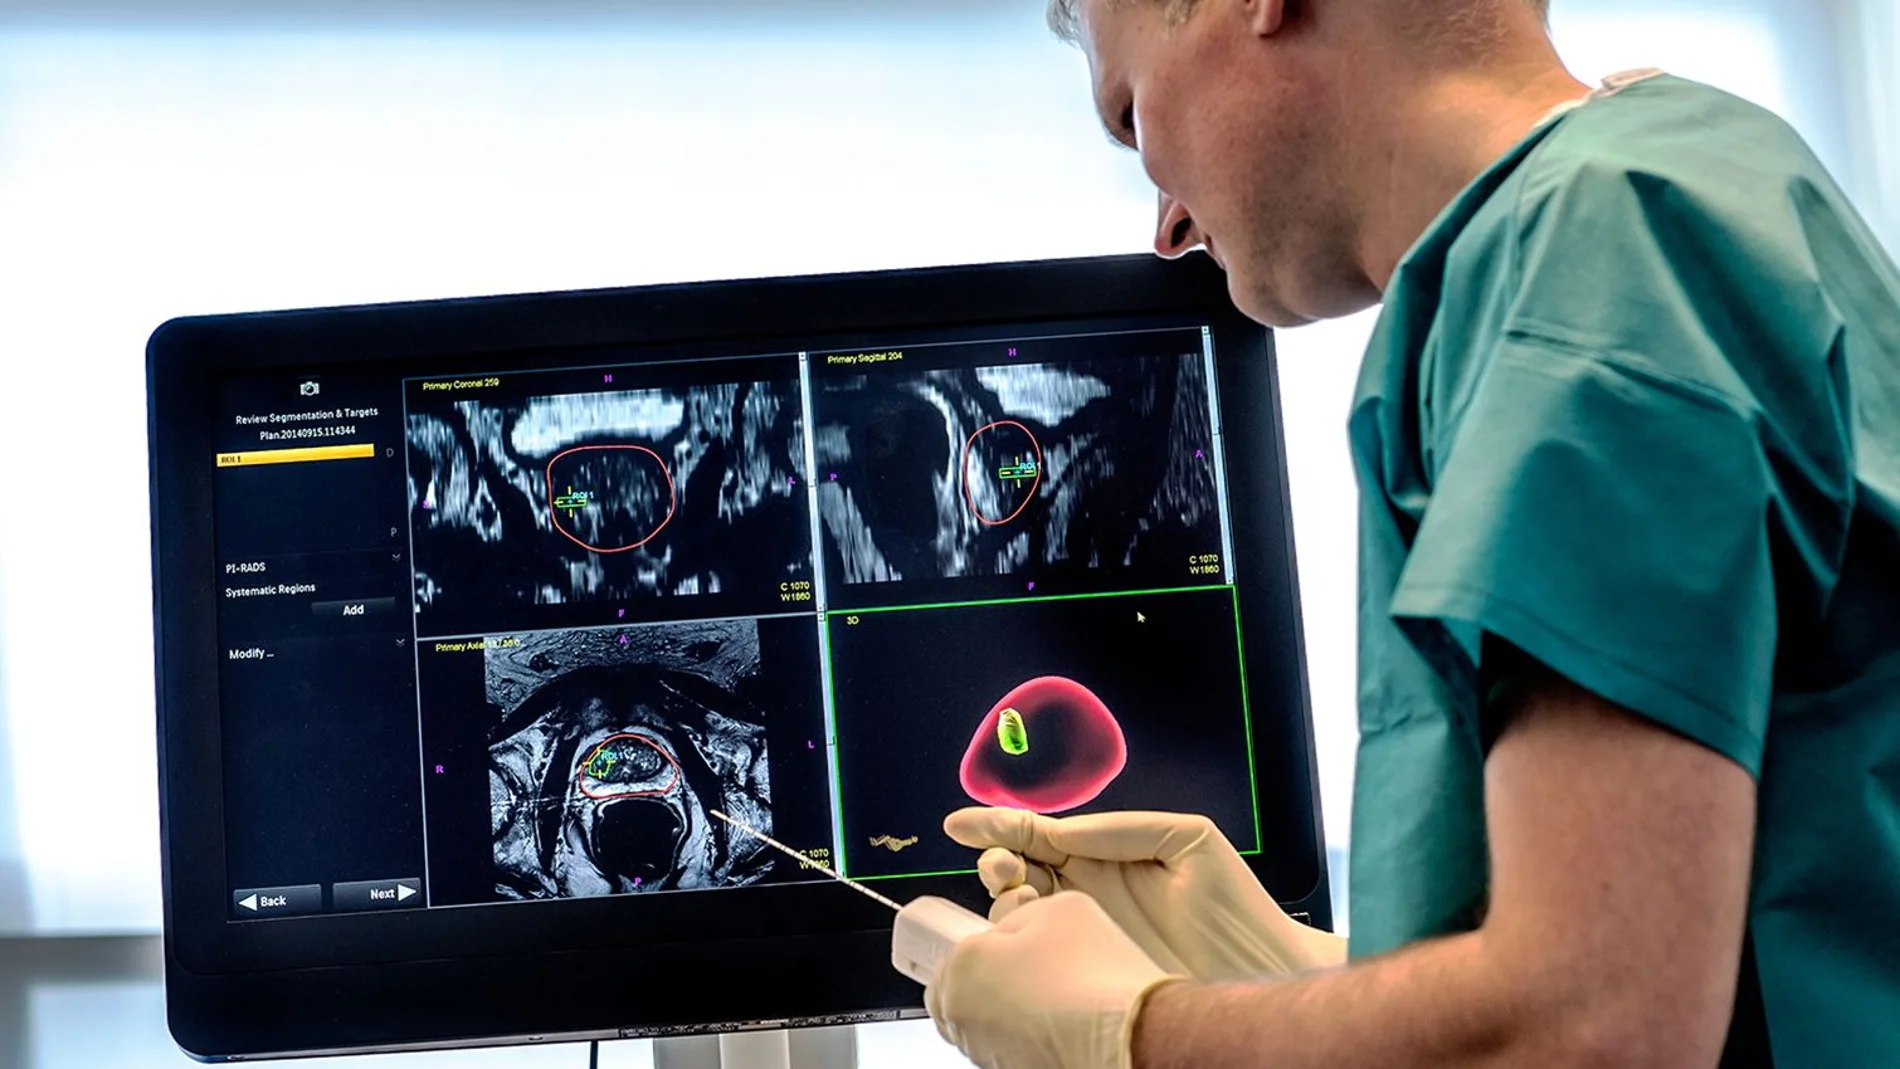 Uno de los mayores retos para un diagnóstico de precisión es la capacitación tecnológica de los hospitales